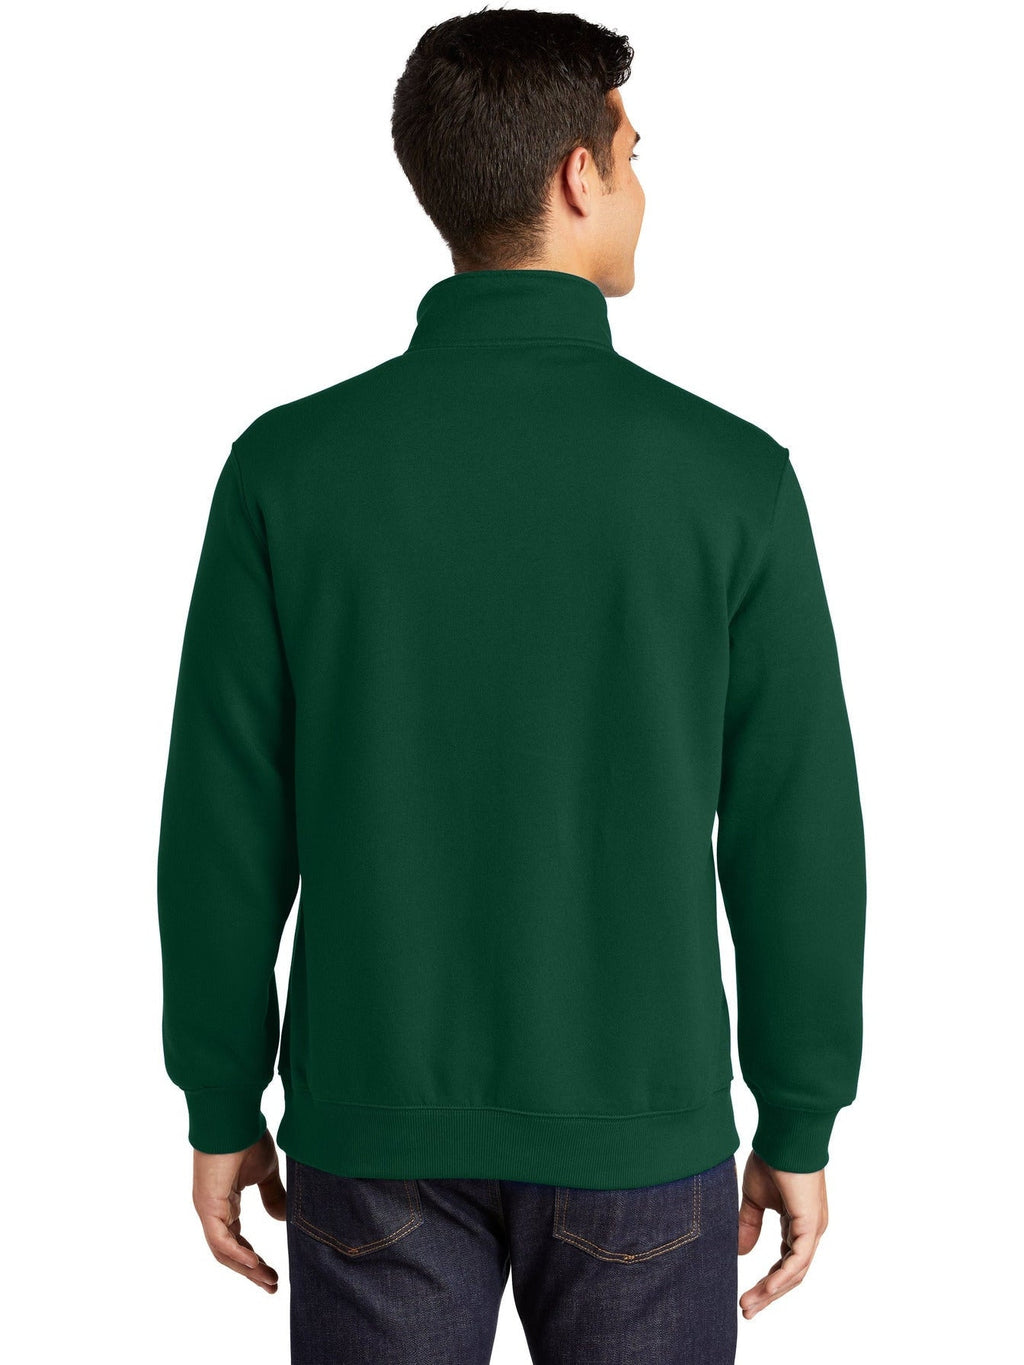 Custom Sport-Tek Premium Quarter Zip Sweatshirt - Design Quarter